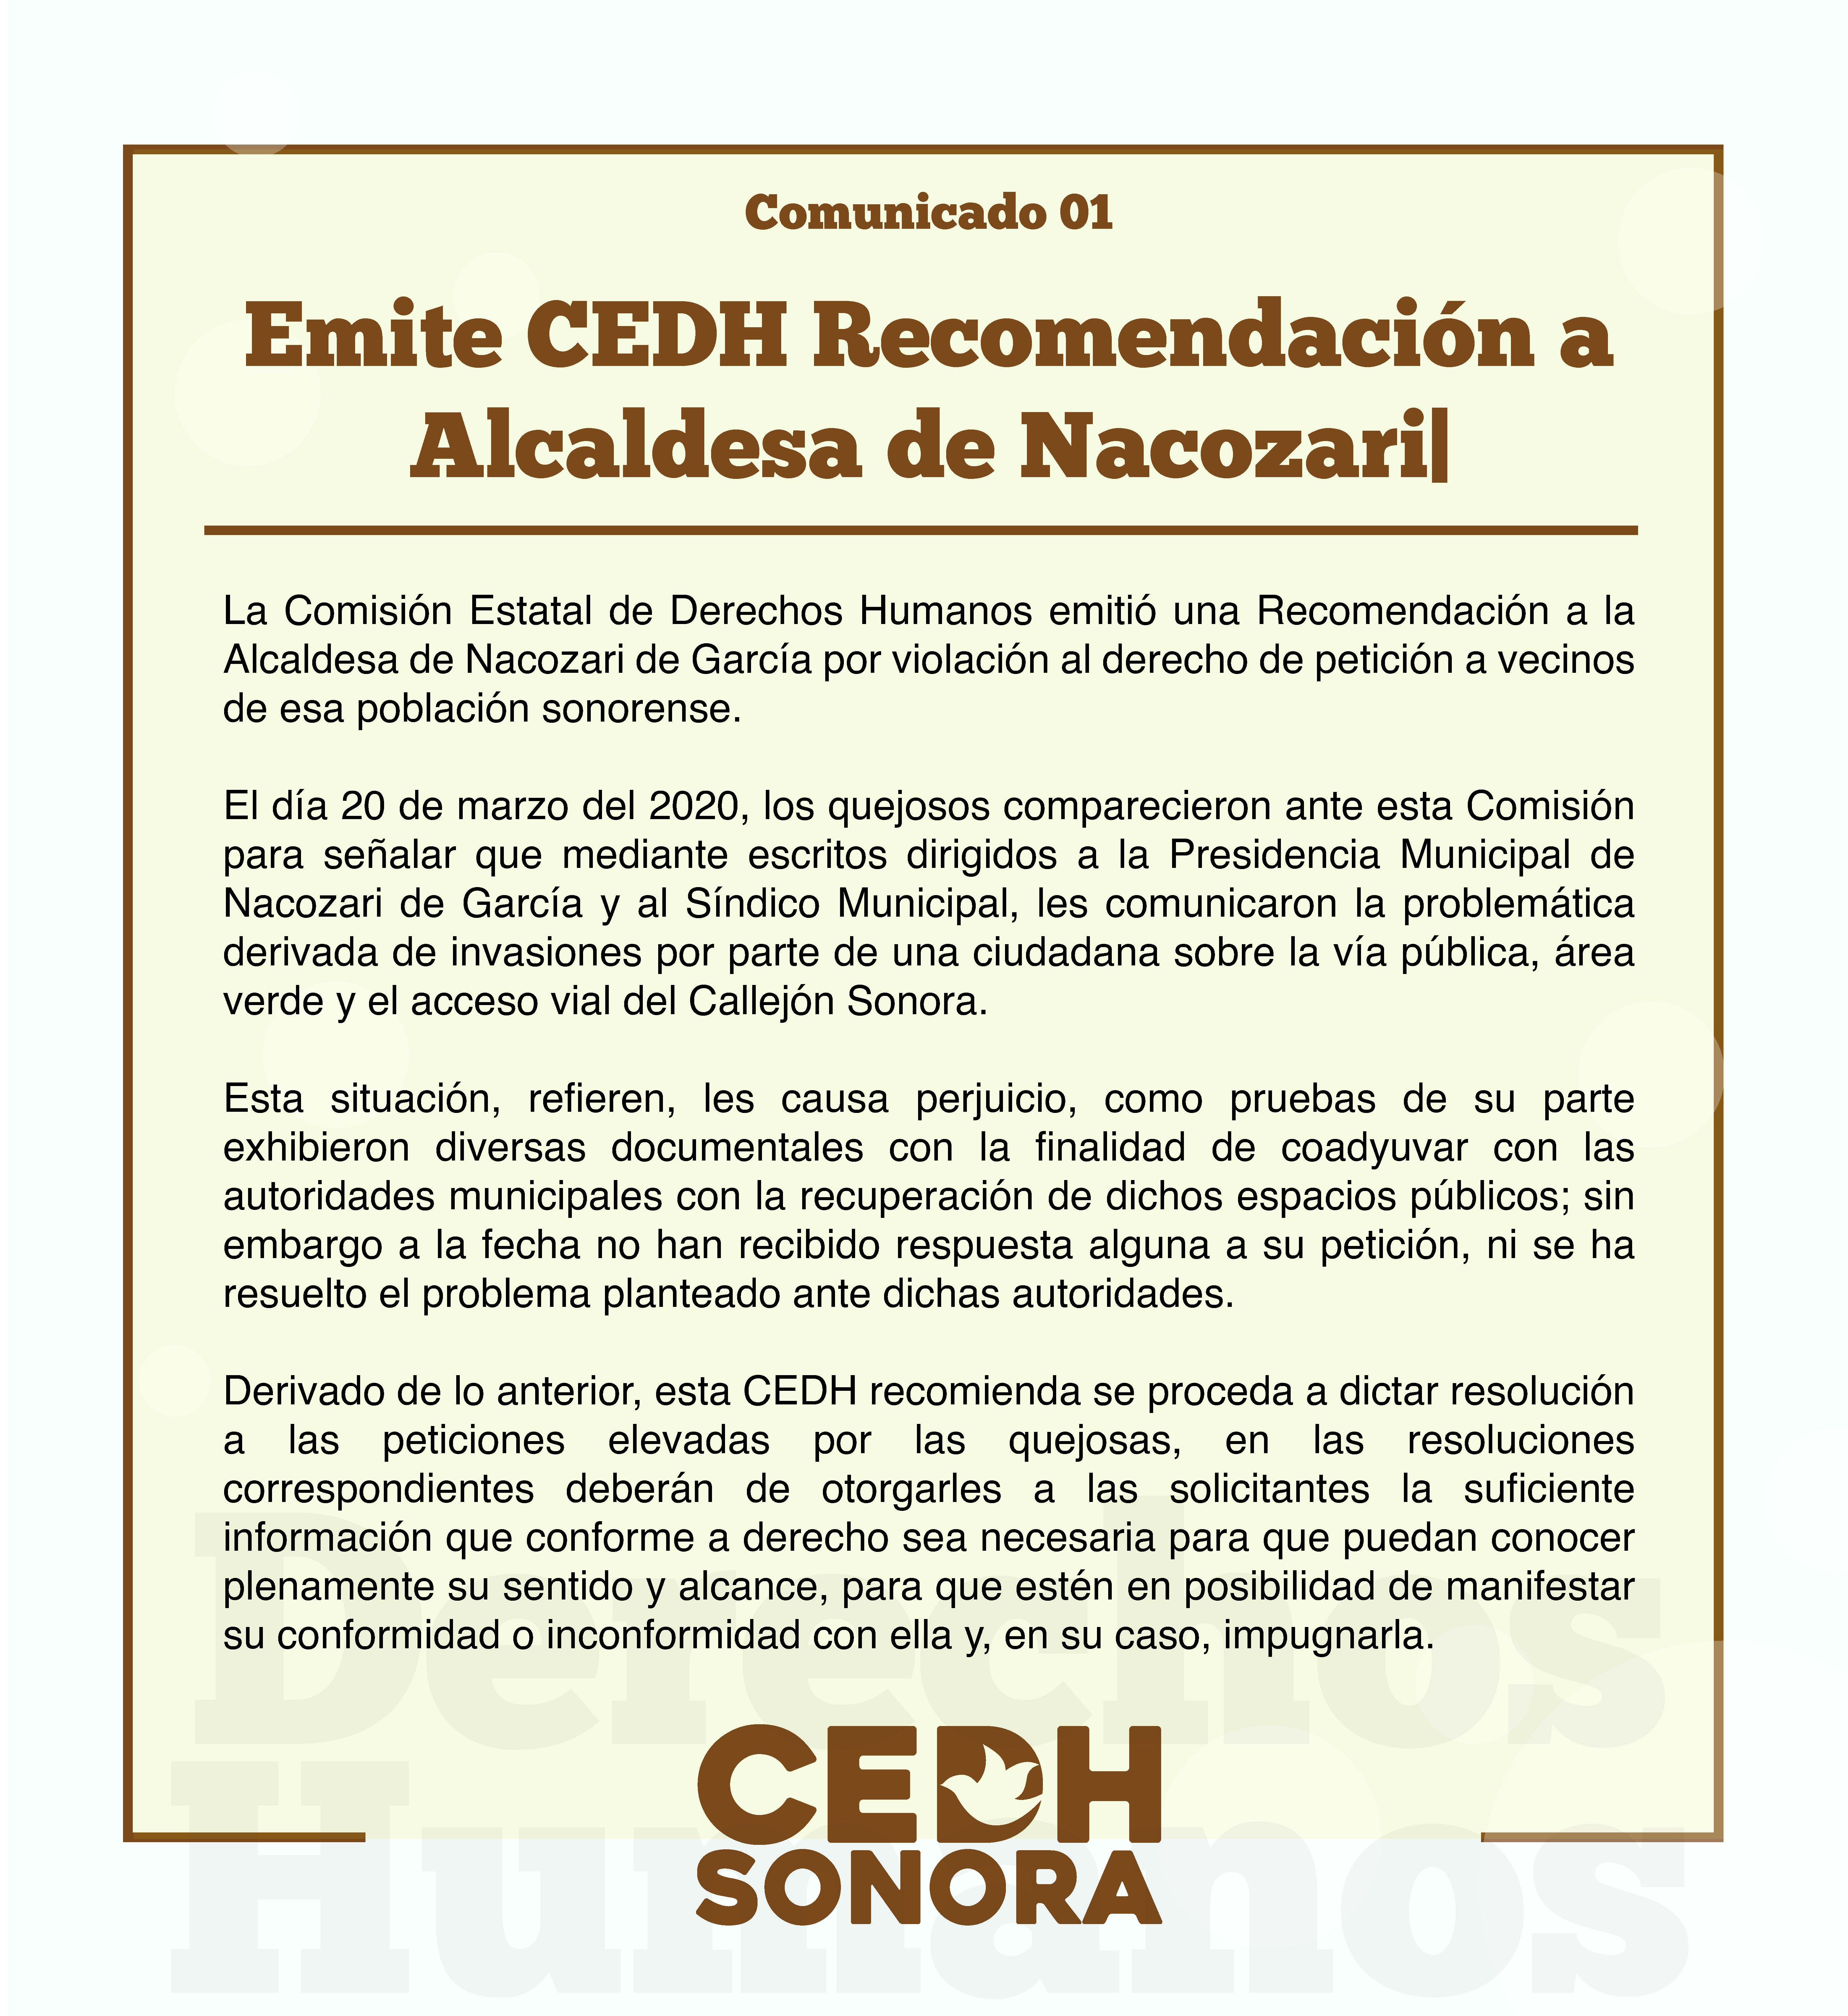 Emite CEDH Recomendación a Alcaldesa de Nacozari